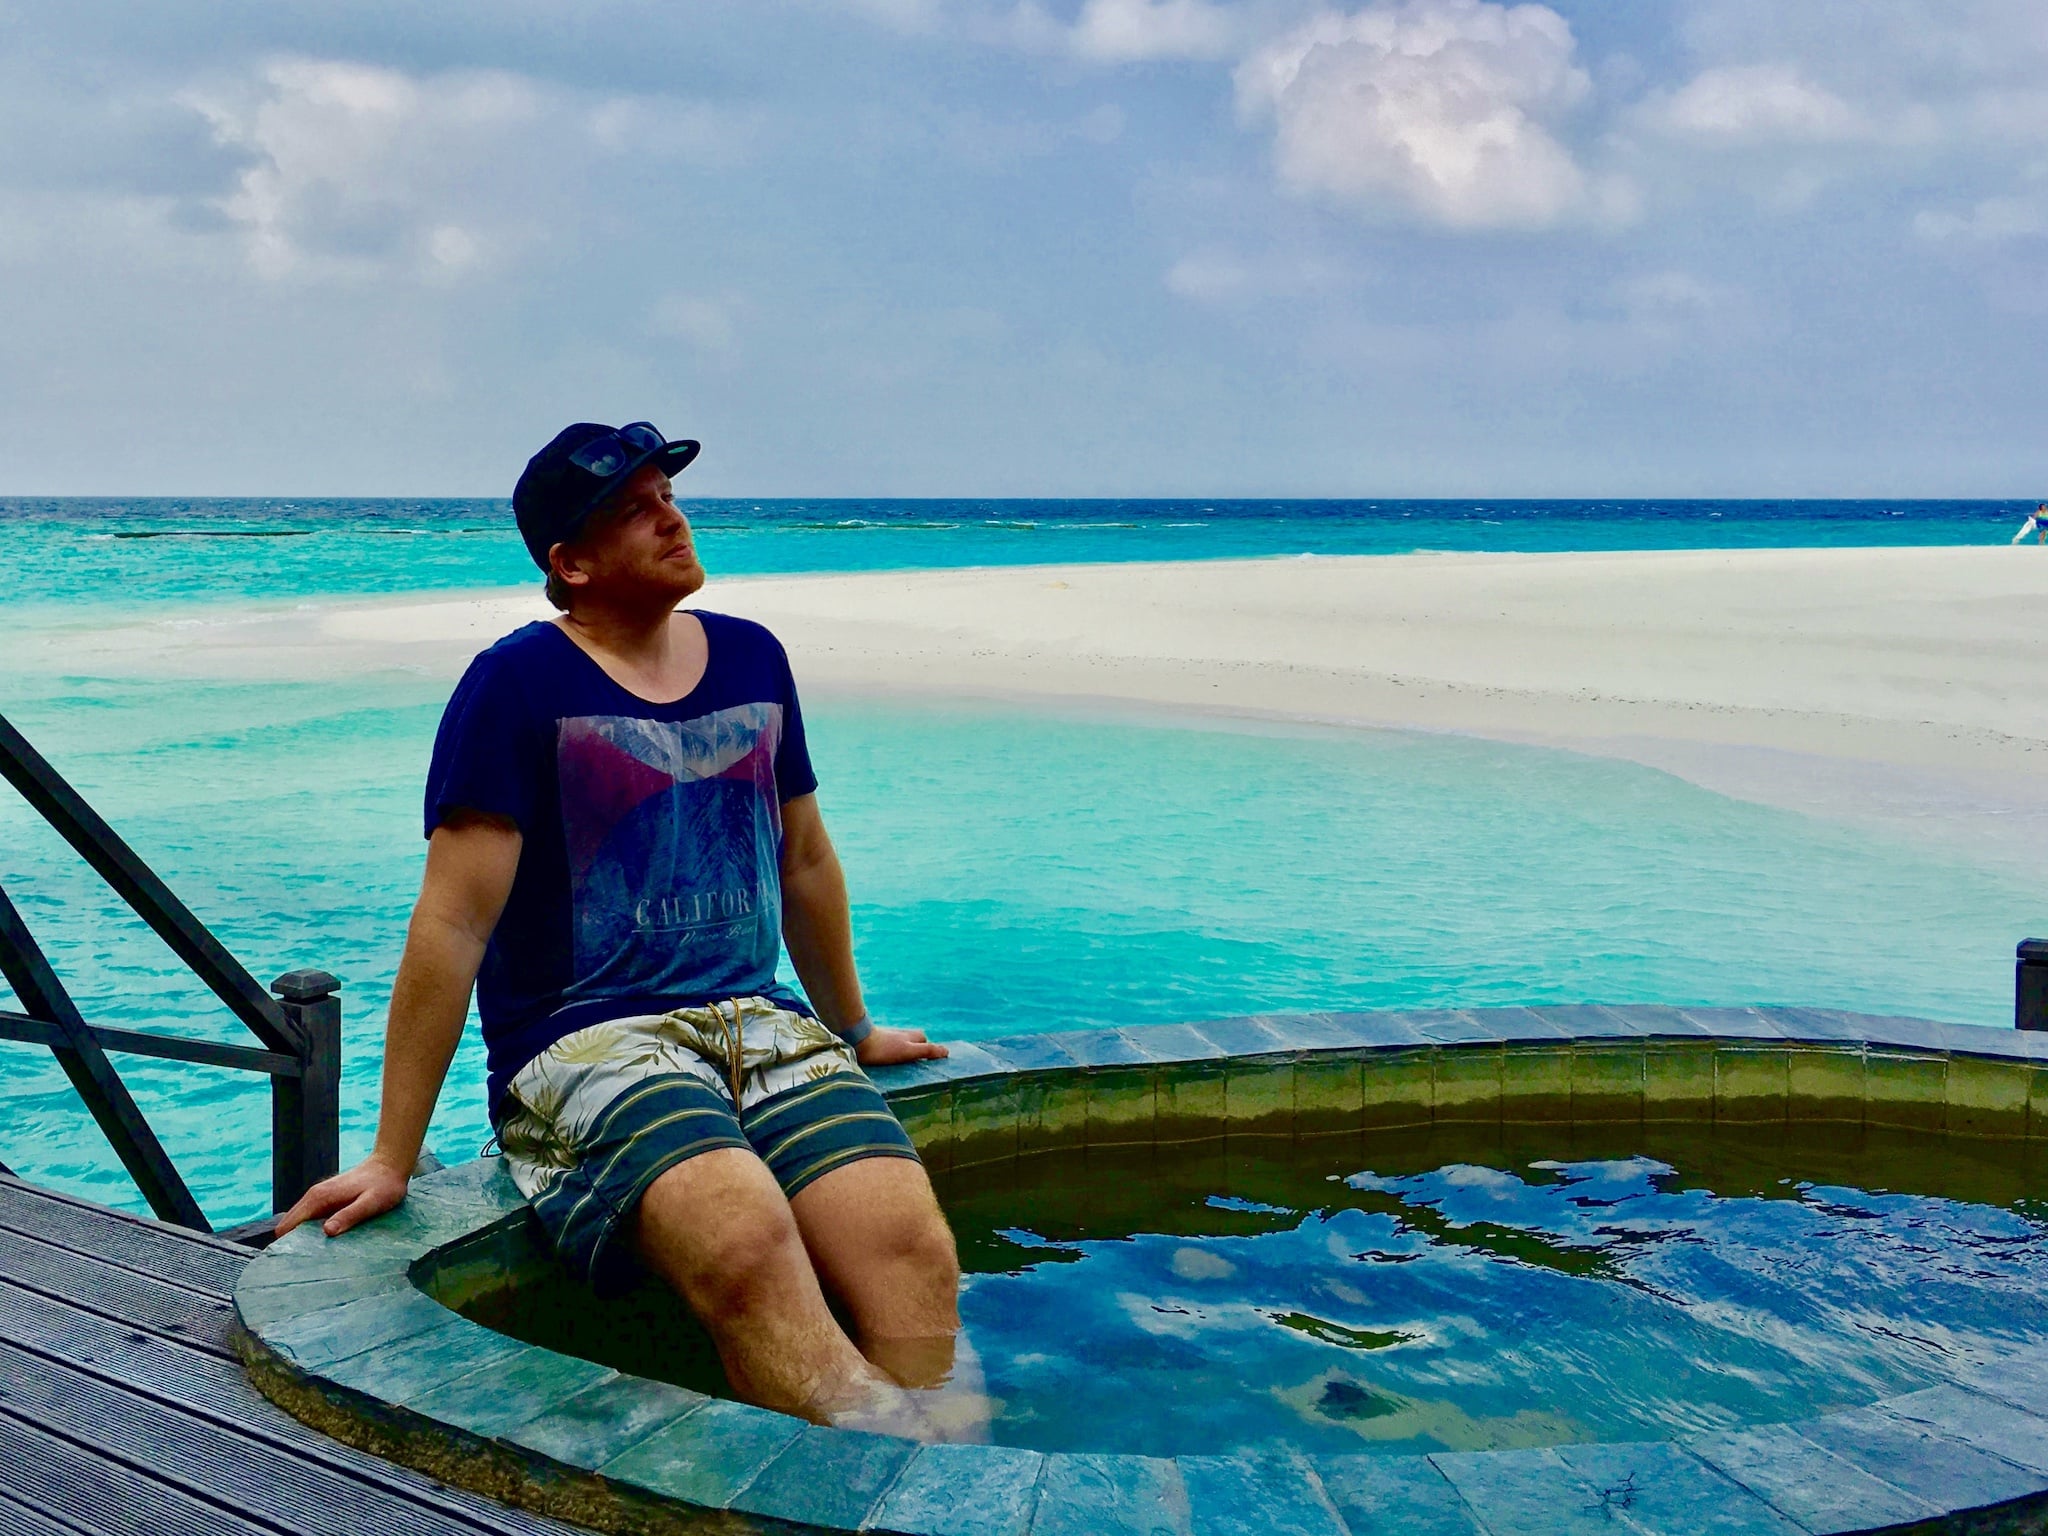 Lascia che la tua mente vaghi e spegni la vita di tutti i giorni: funziona meravigliosamente alle Maldive. Diario di viaggio Consigli per le Maldive